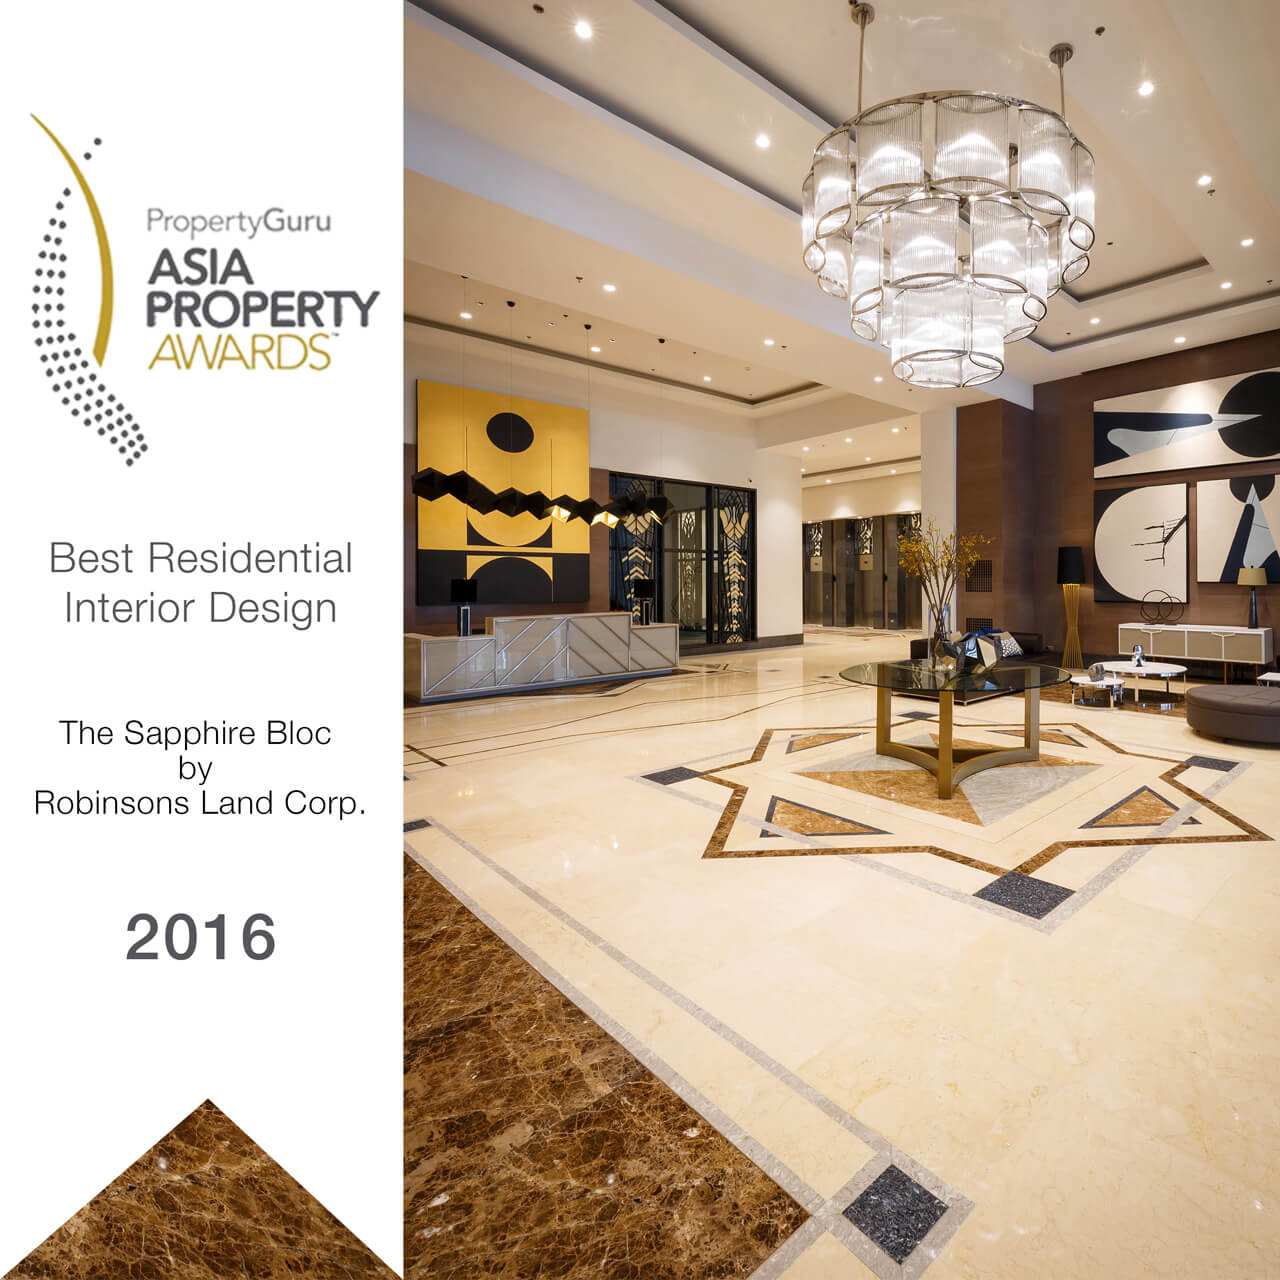 DesignHQ - PropertyGuru Asia Property Awards 2016: The Sapphire Bloc